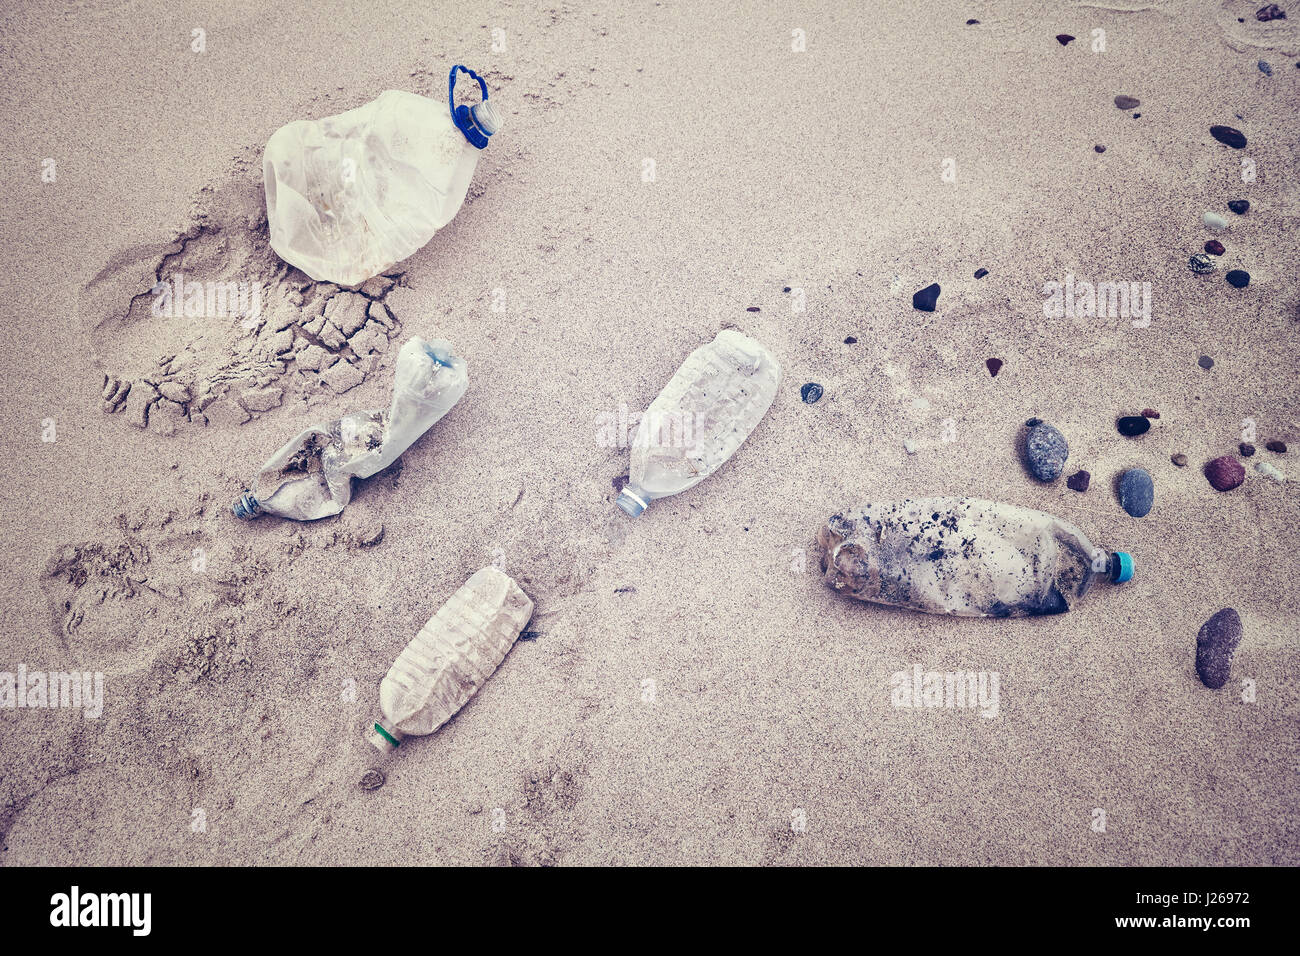 Retro stilisierte Bild des leeren Plastikflaschen von Touristen am Strand, Umweltverschmutzung Konzept Bild hinterlassen. Stockfoto